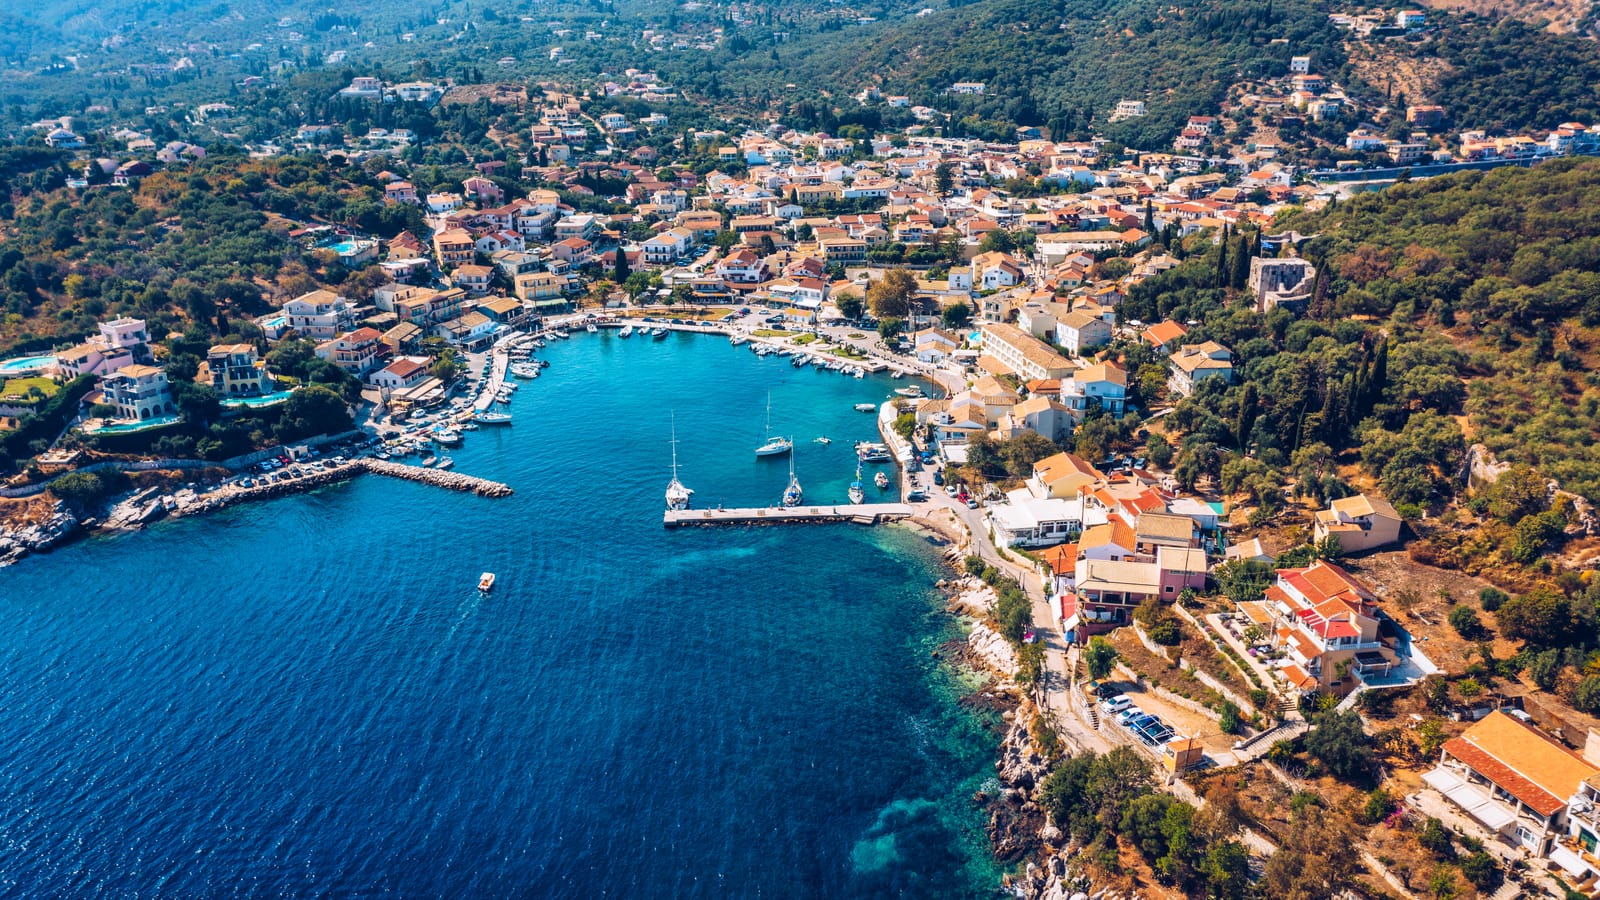 Κασσιόπη στο νησί της Κέρκυρας – Ιστορία και Ομορφιά